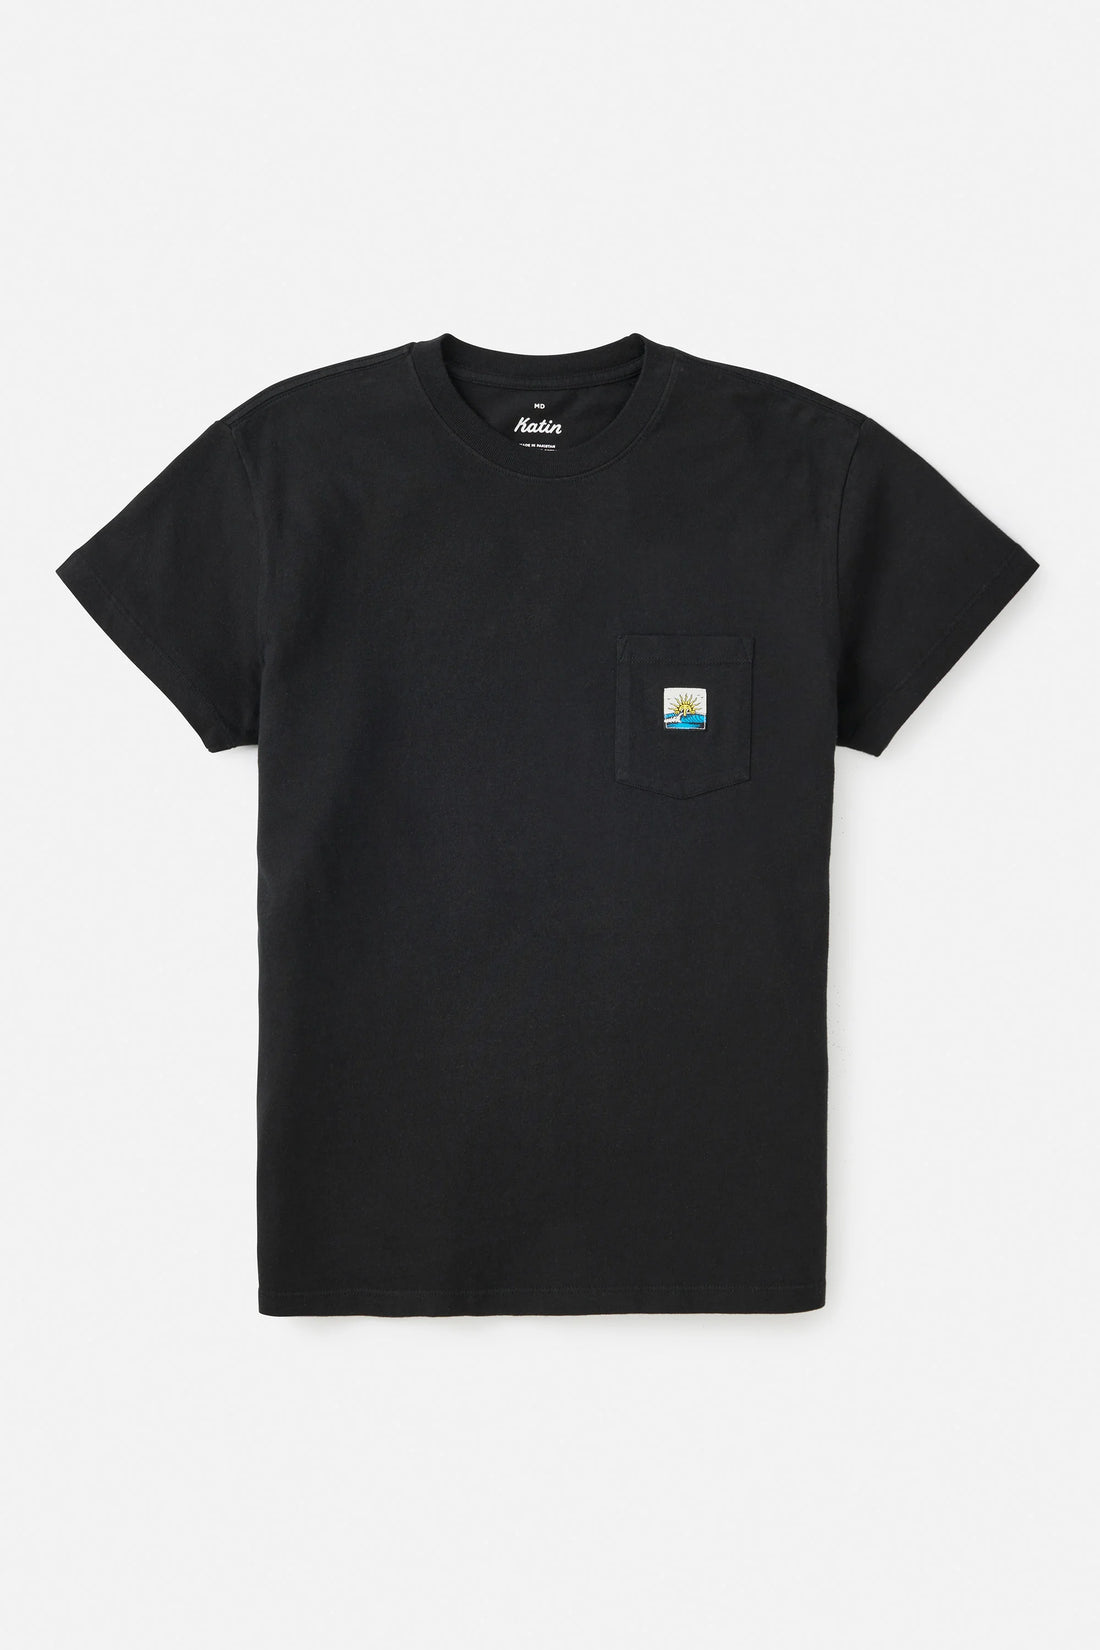 T-Shirt Glance Noir Katin